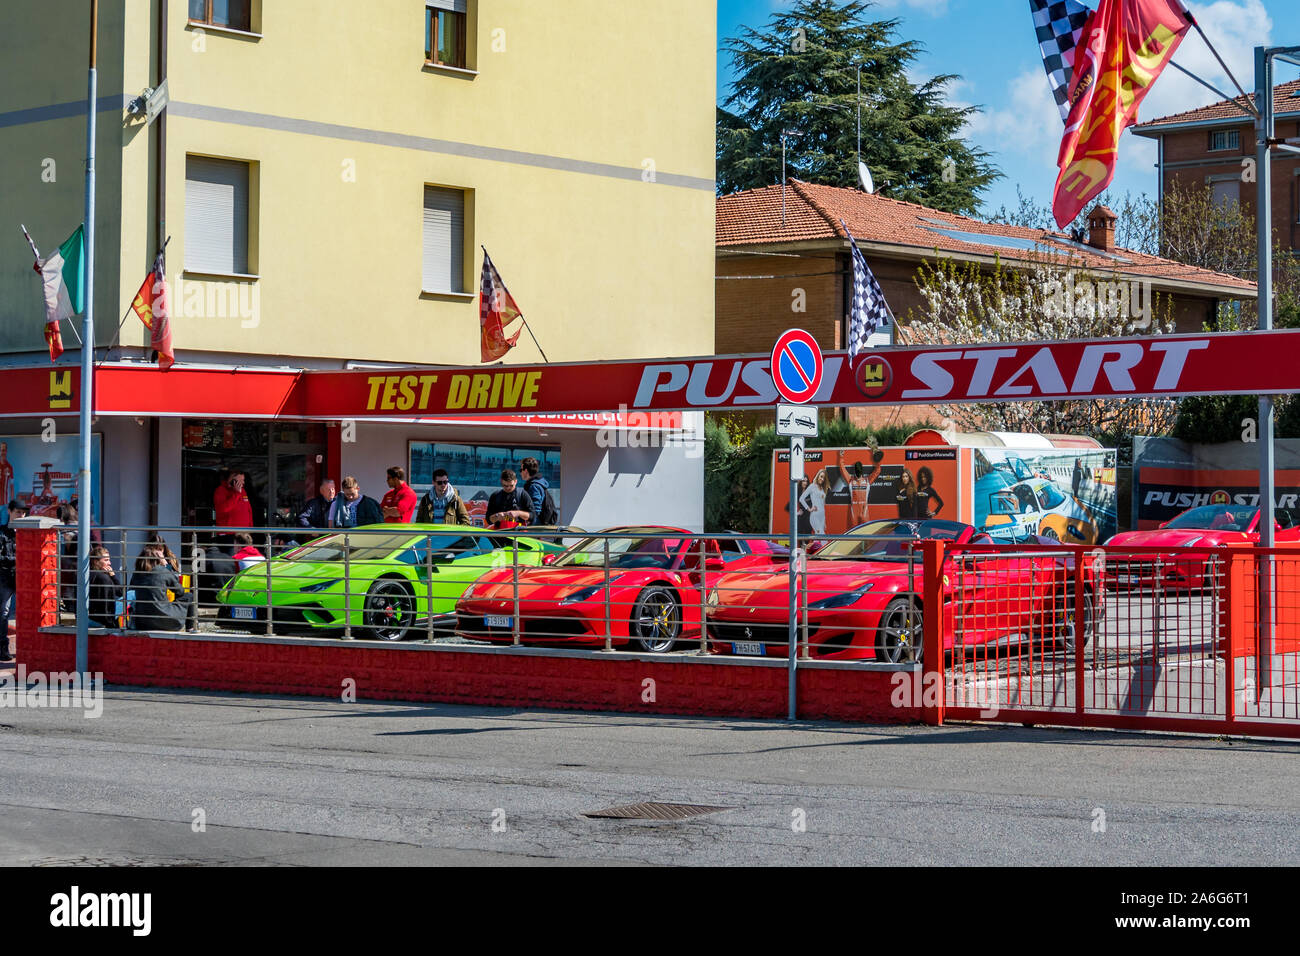 Maranello Modena Italy 27 March 2019: Ferraris ready for test . Rent ferrari test drive Maranello. Stock Photo